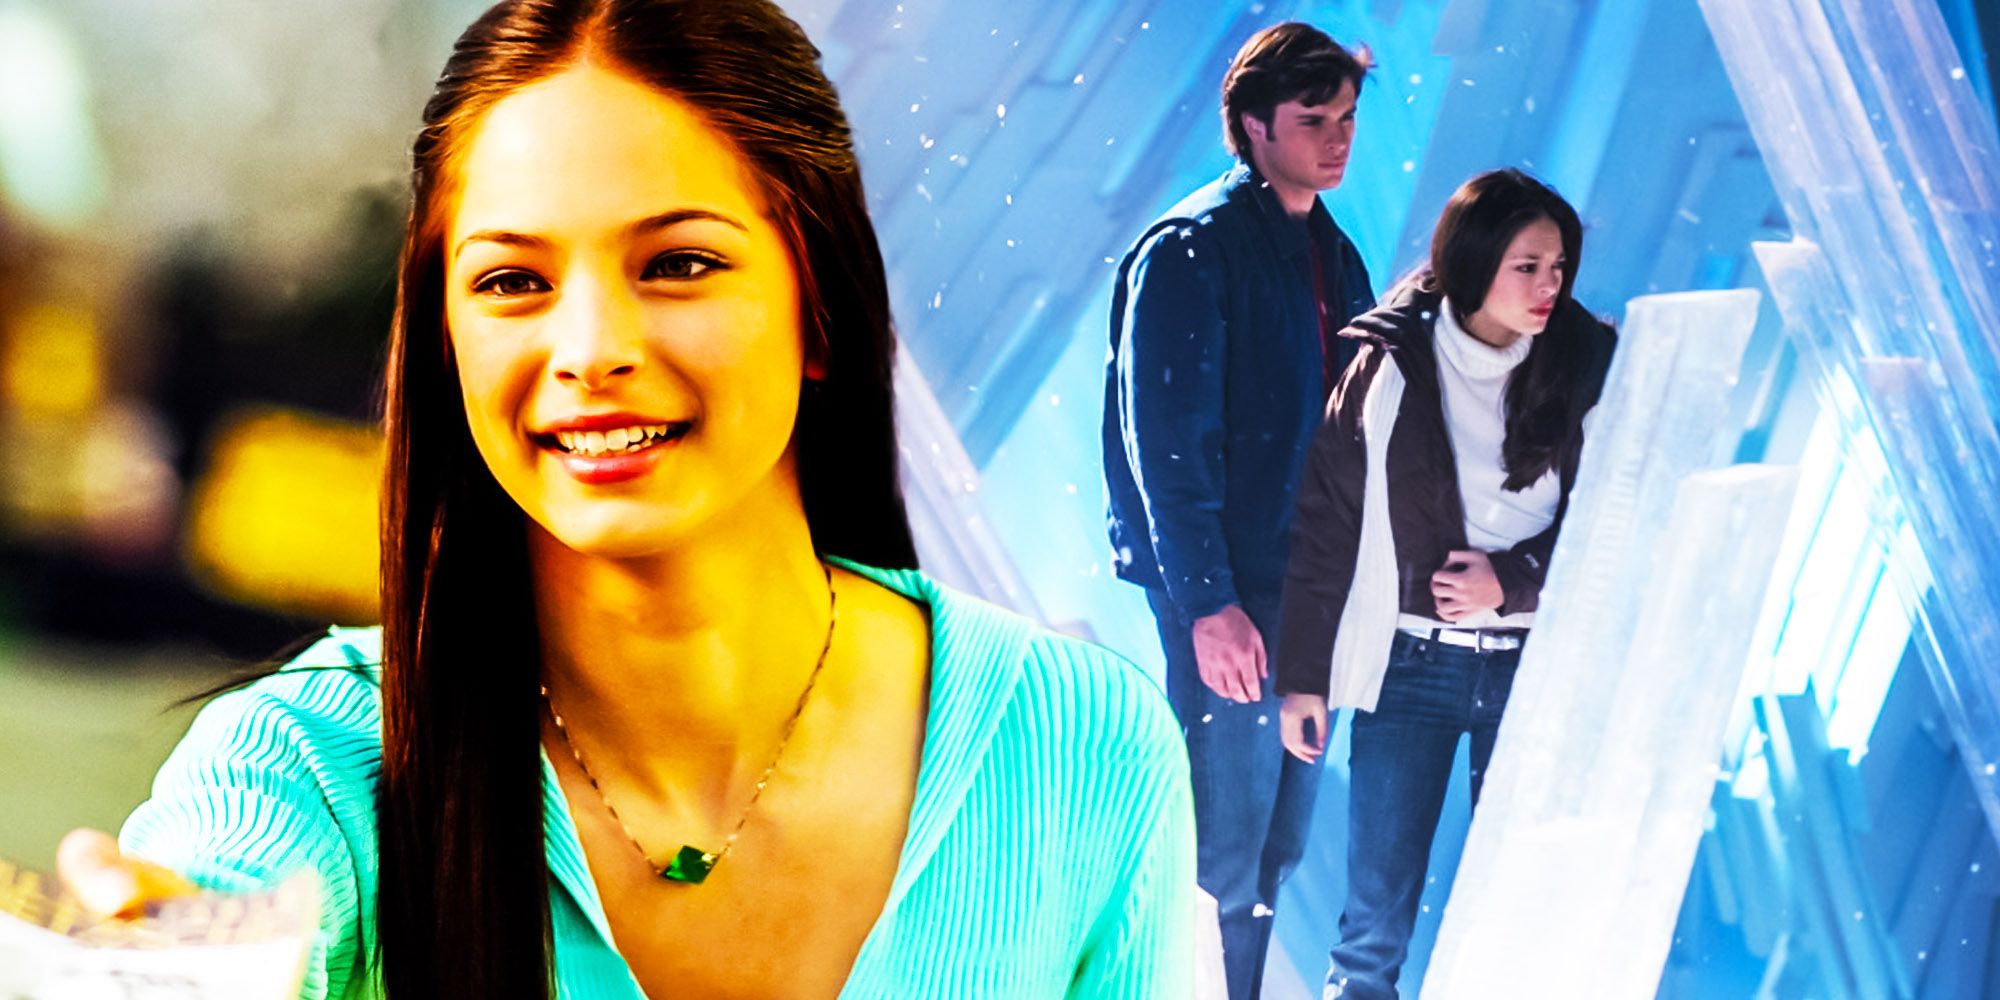 Smallville season 5 Lana Lang clark kent reckoning